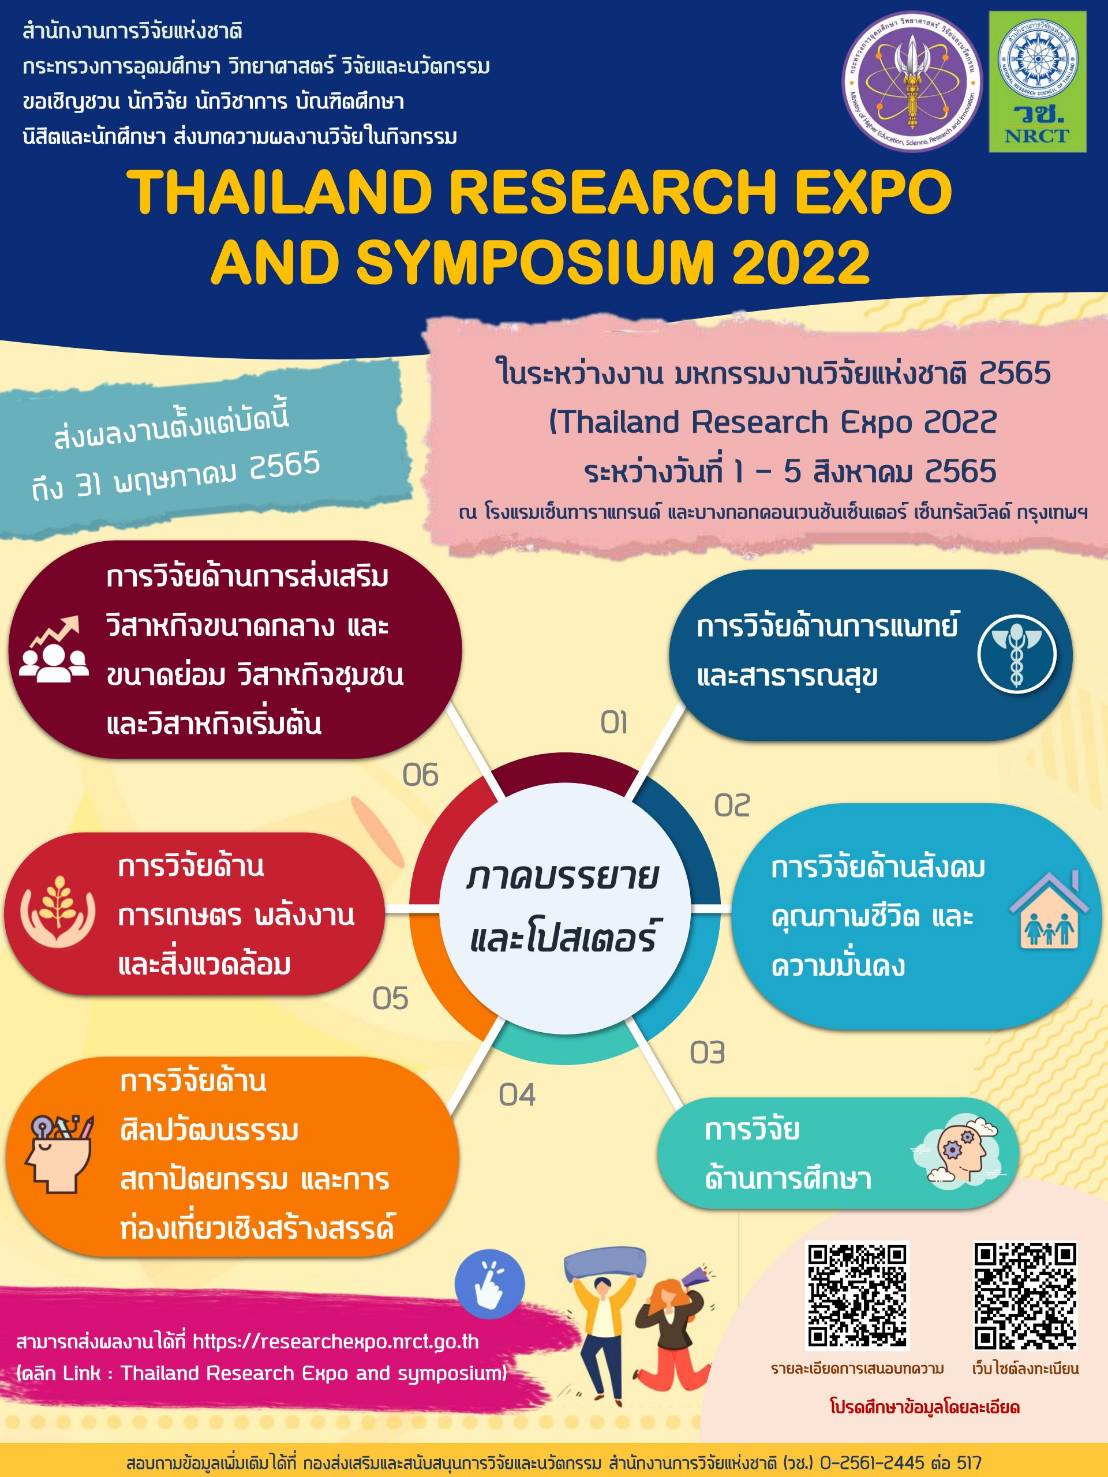 ขอเชิญชวนส่งบทความผลงานวิจัยเข้าร่วมนำเสนอในกิจกรรม Thailand Research Expo and Symposium 2022